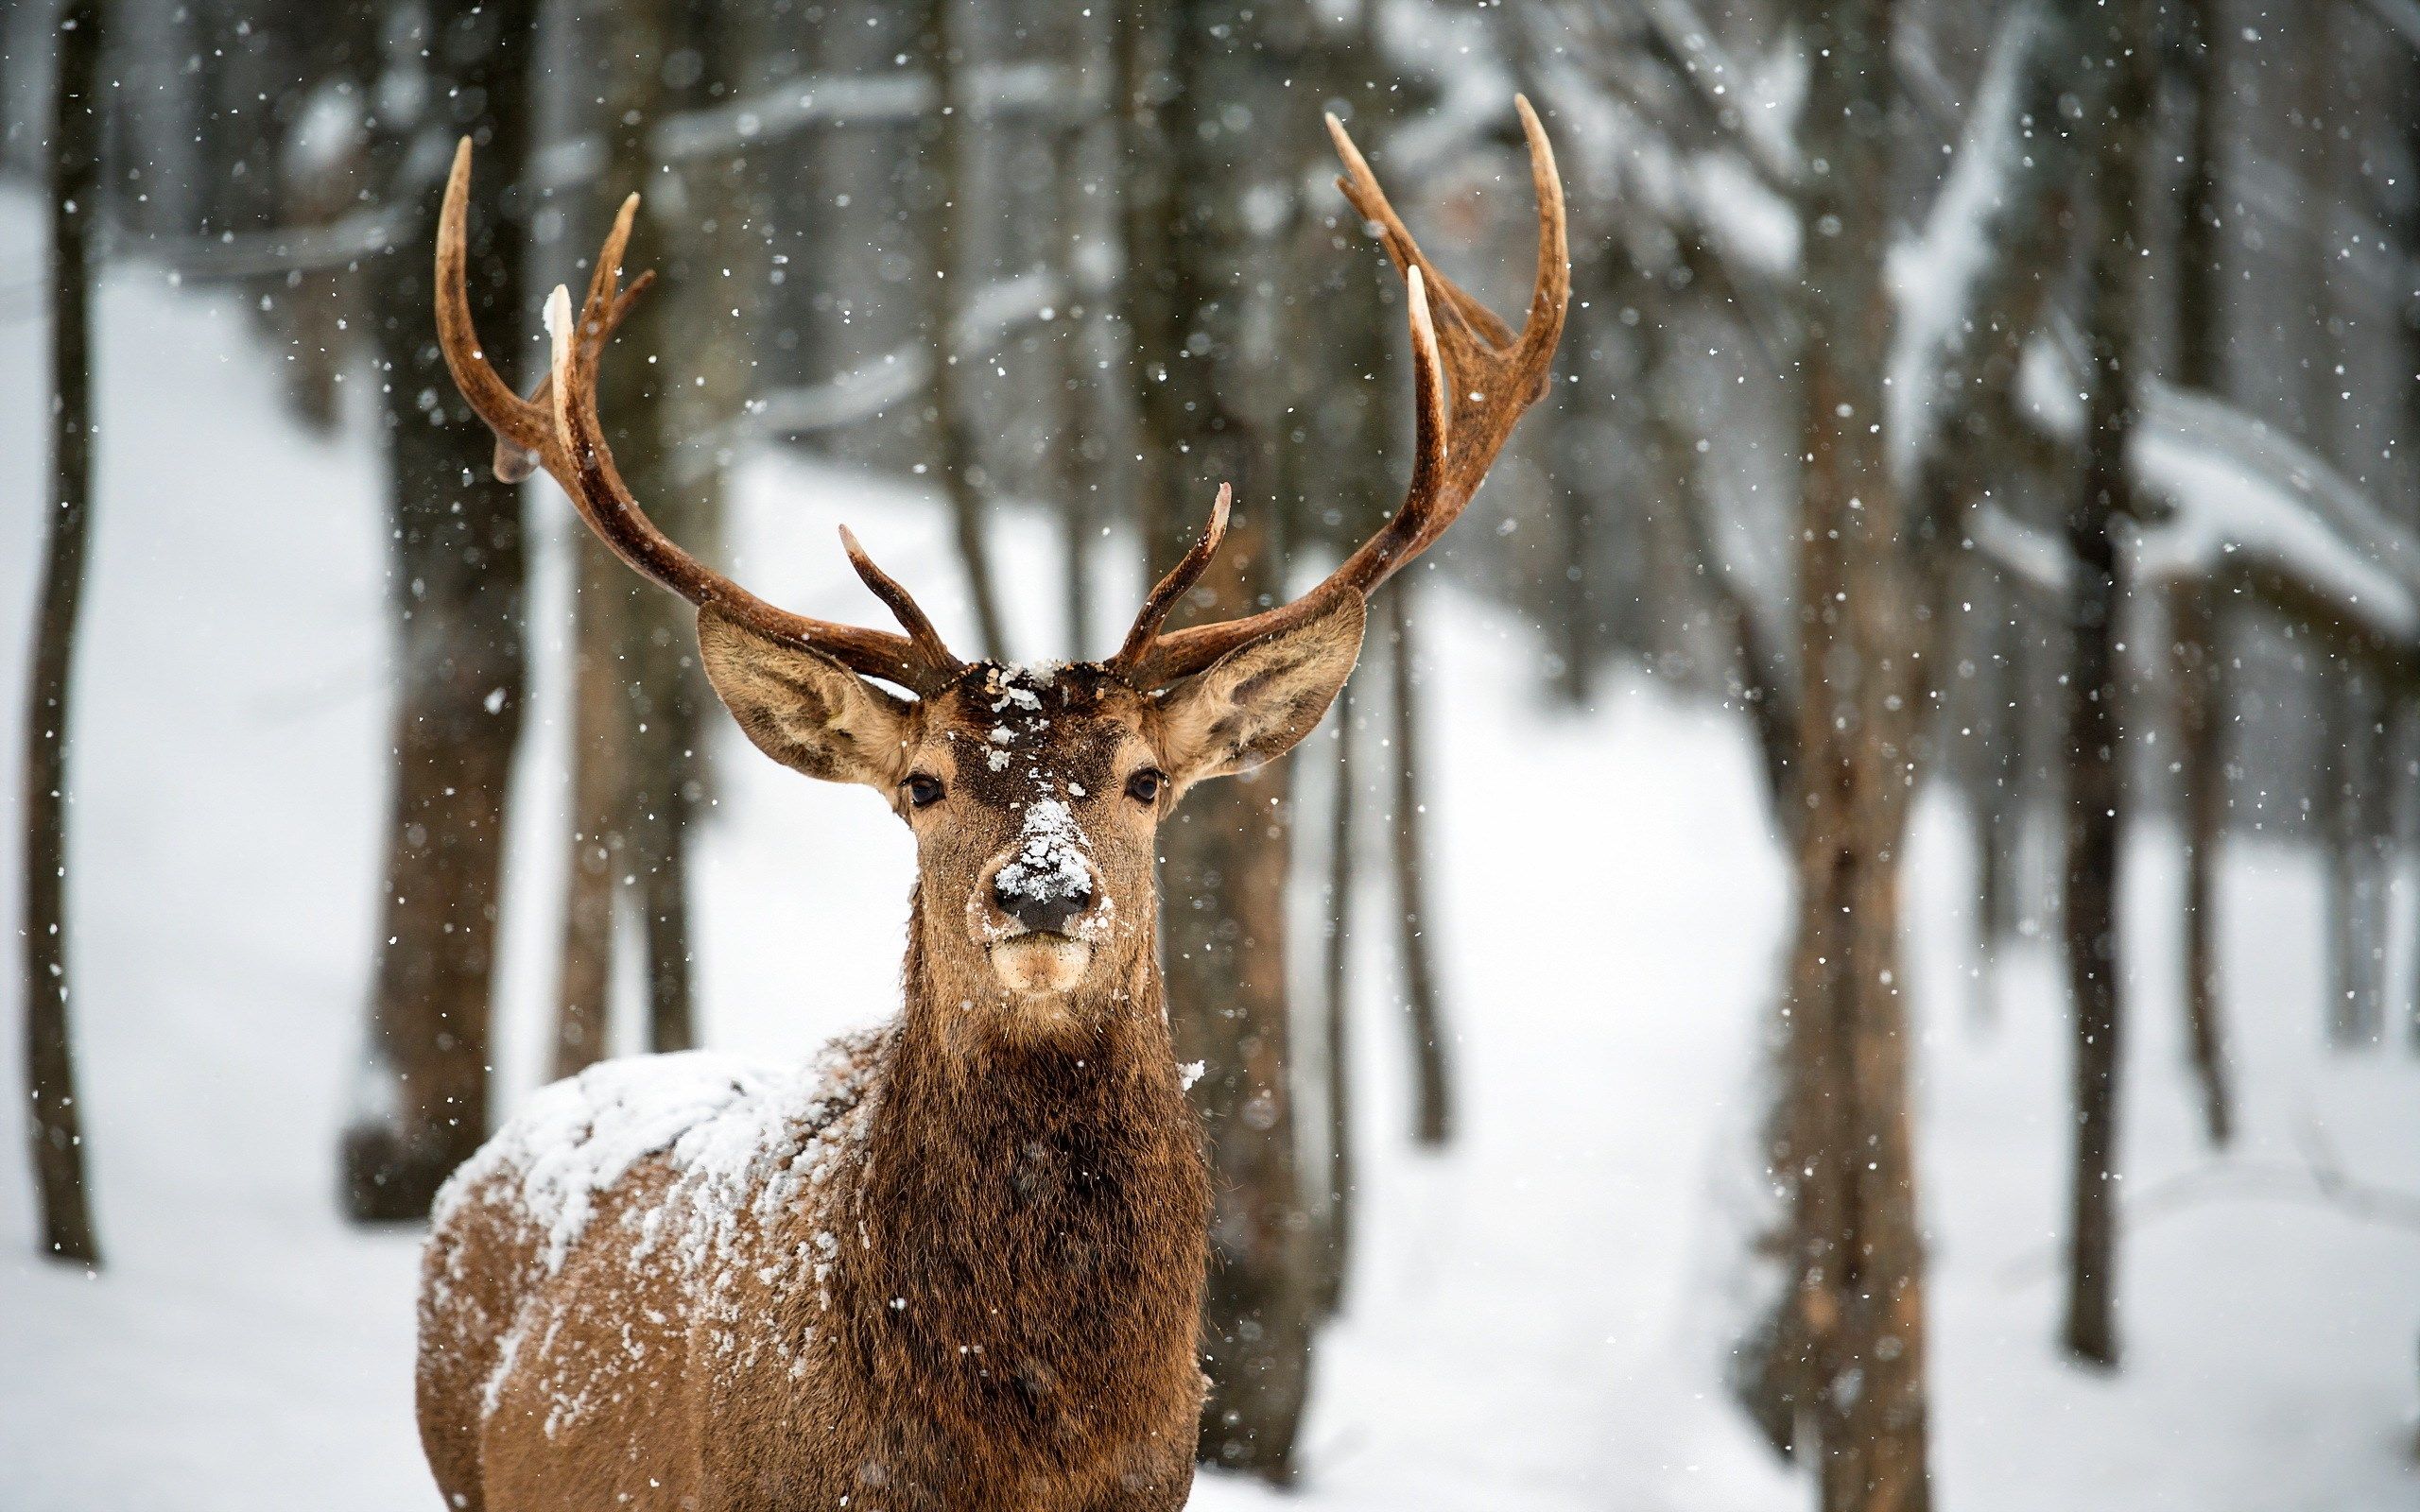 Deer Snow Winter Forest HD Wallpaper - FreeHDWalls | ART REFS ...